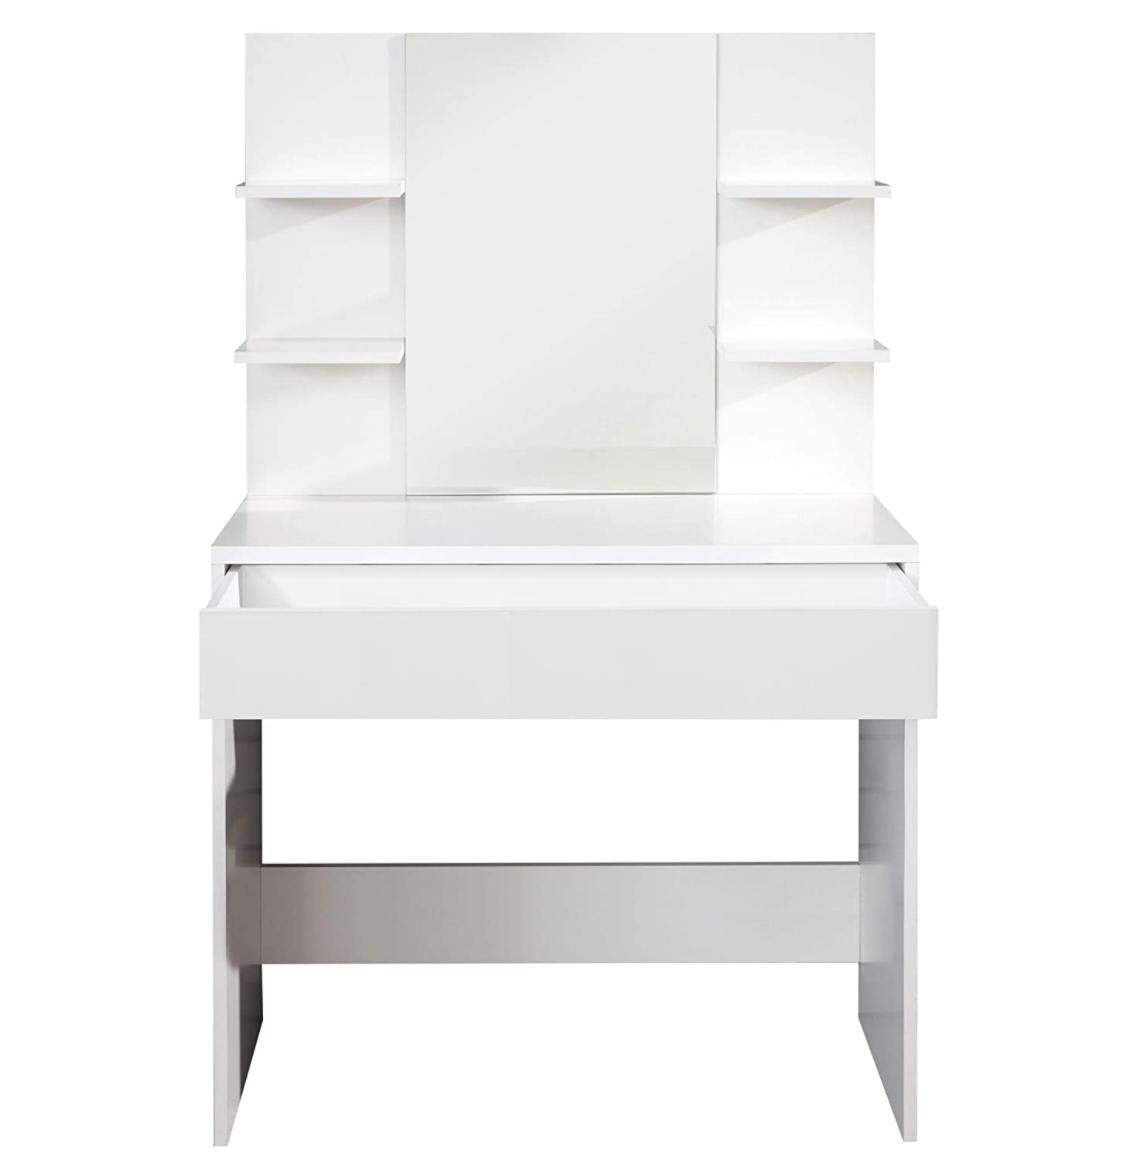 Coiffeuse Amanda de Nancy - Table de travail - Blanc - 85 x 140 x 40 cm